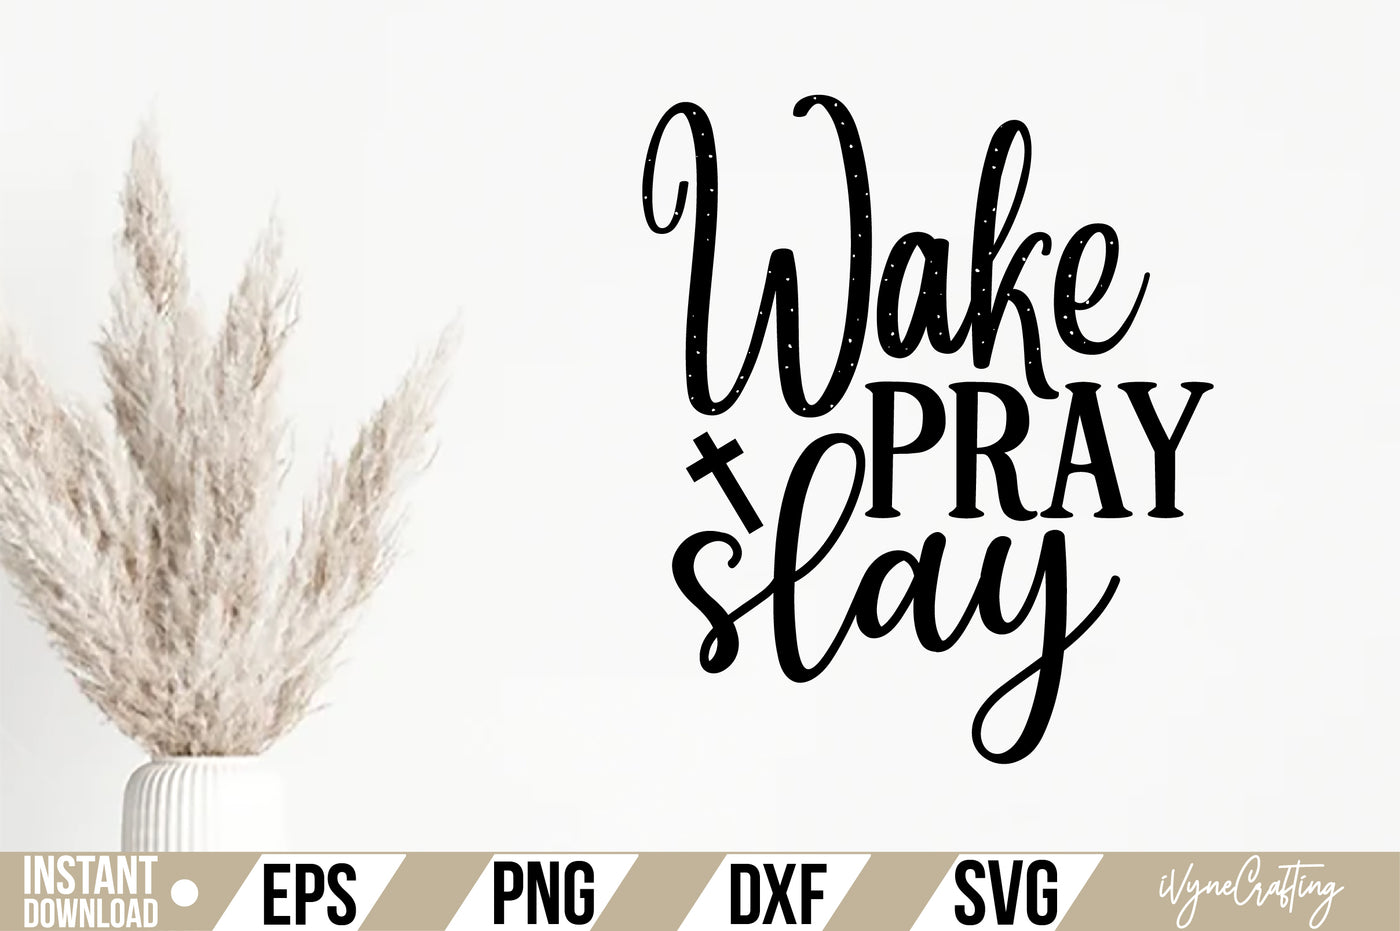 Wake pray slay